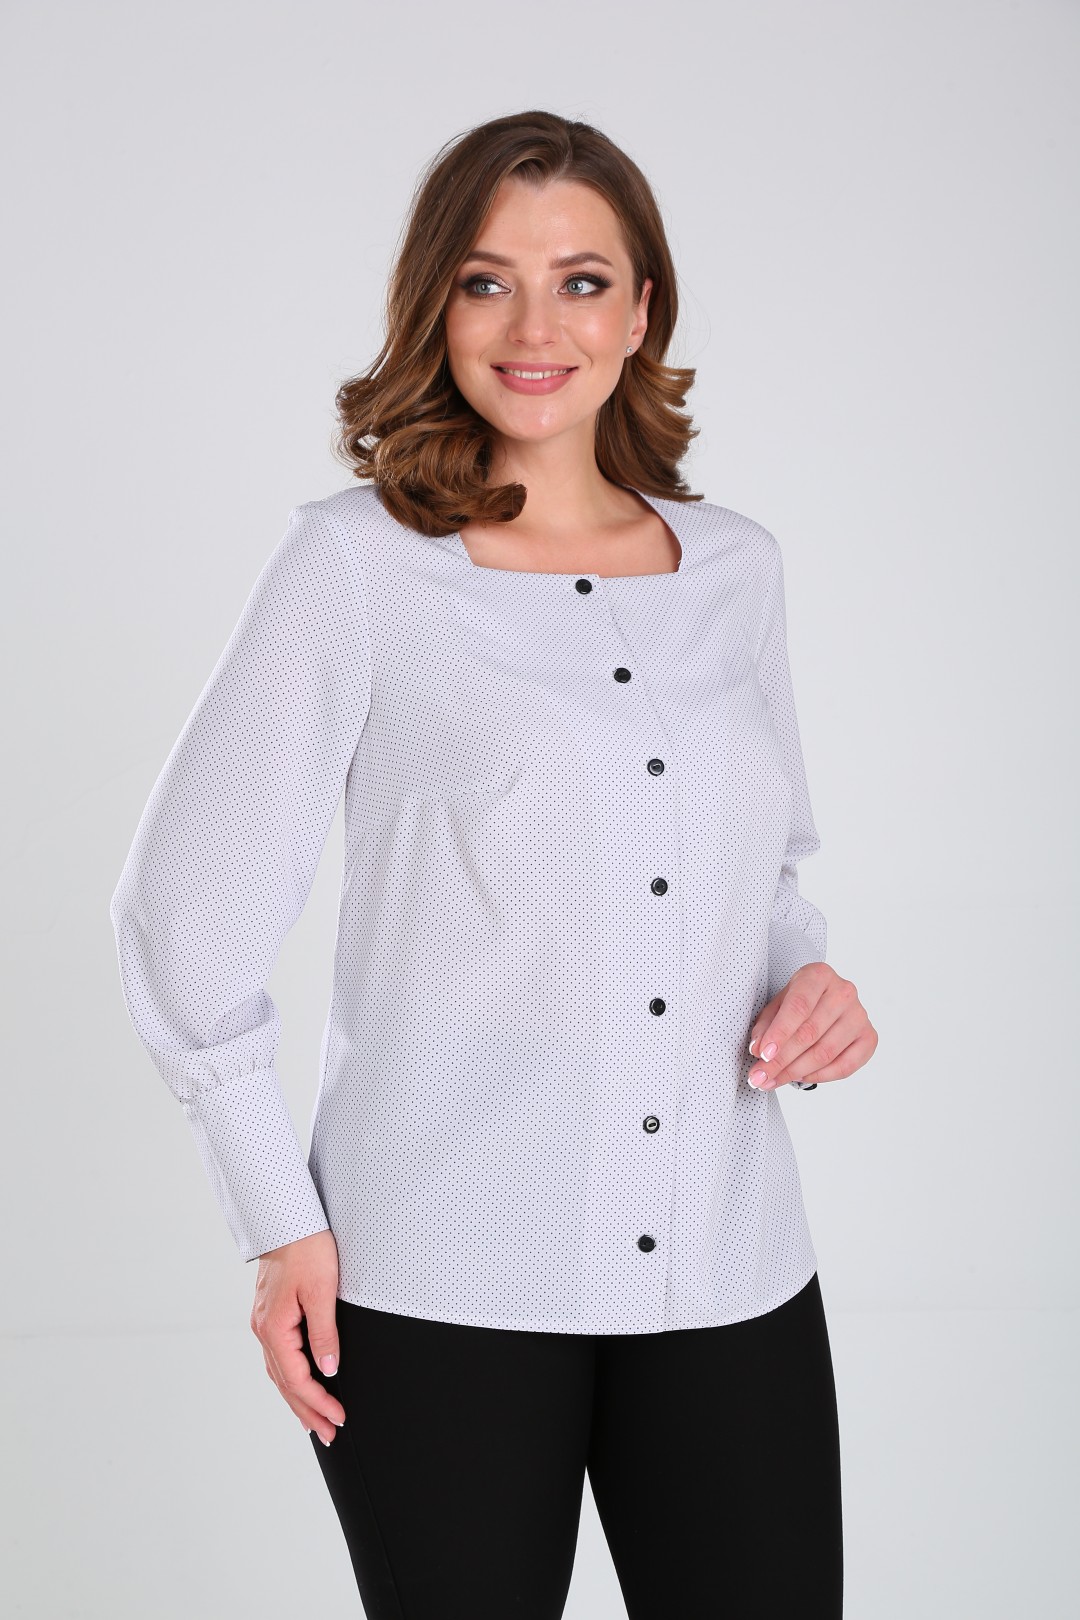 Блузка Элль-стиль 507 мелкий серый горох на светло-сером фоне